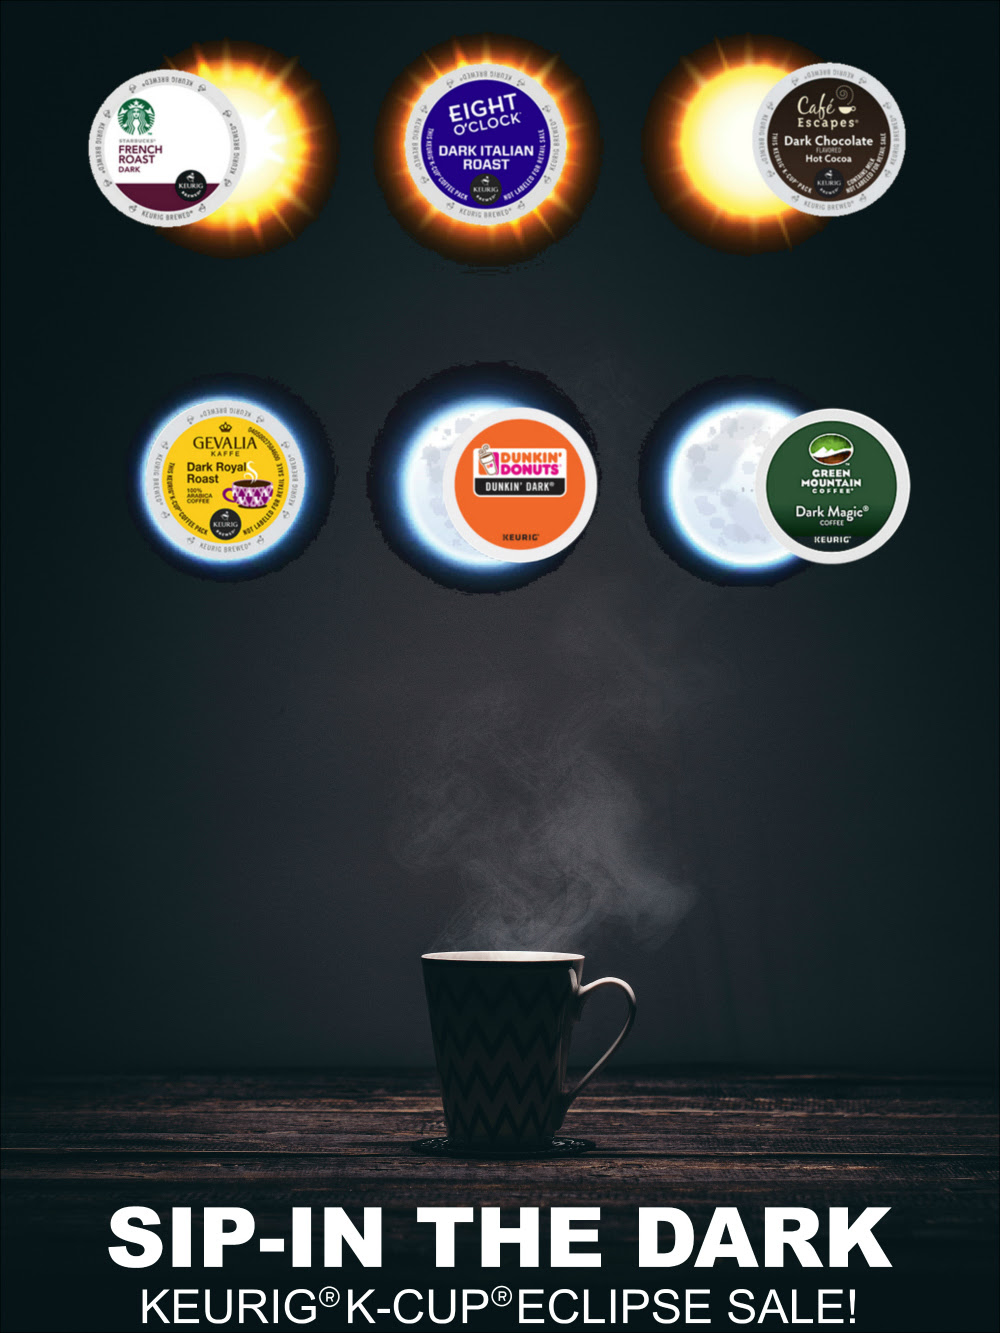 Sip-in dark Keurig® K-Cup®  coffee eclipse sale